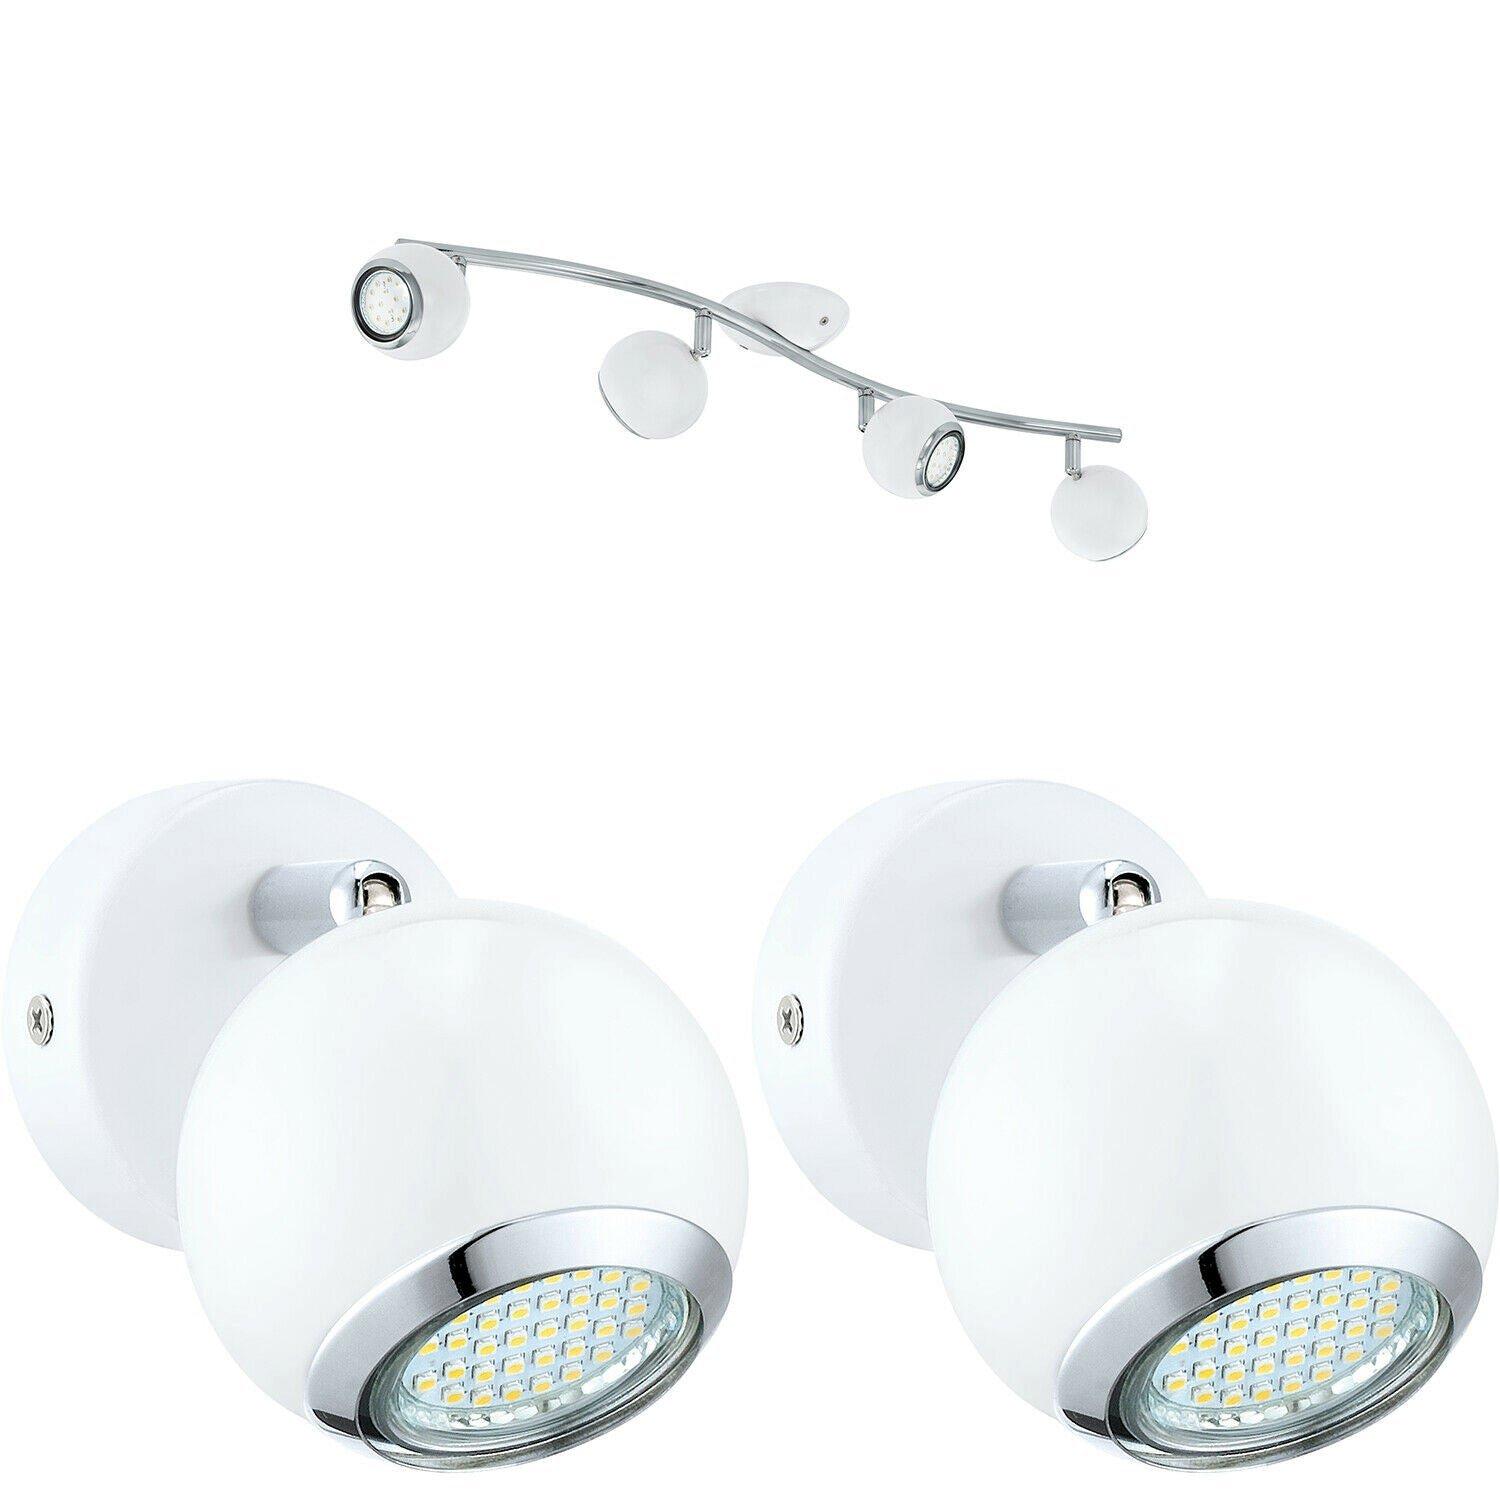 Quad Ceiling Spot Light & 2x Matching Wall Lights Matt White Adjustable Shade